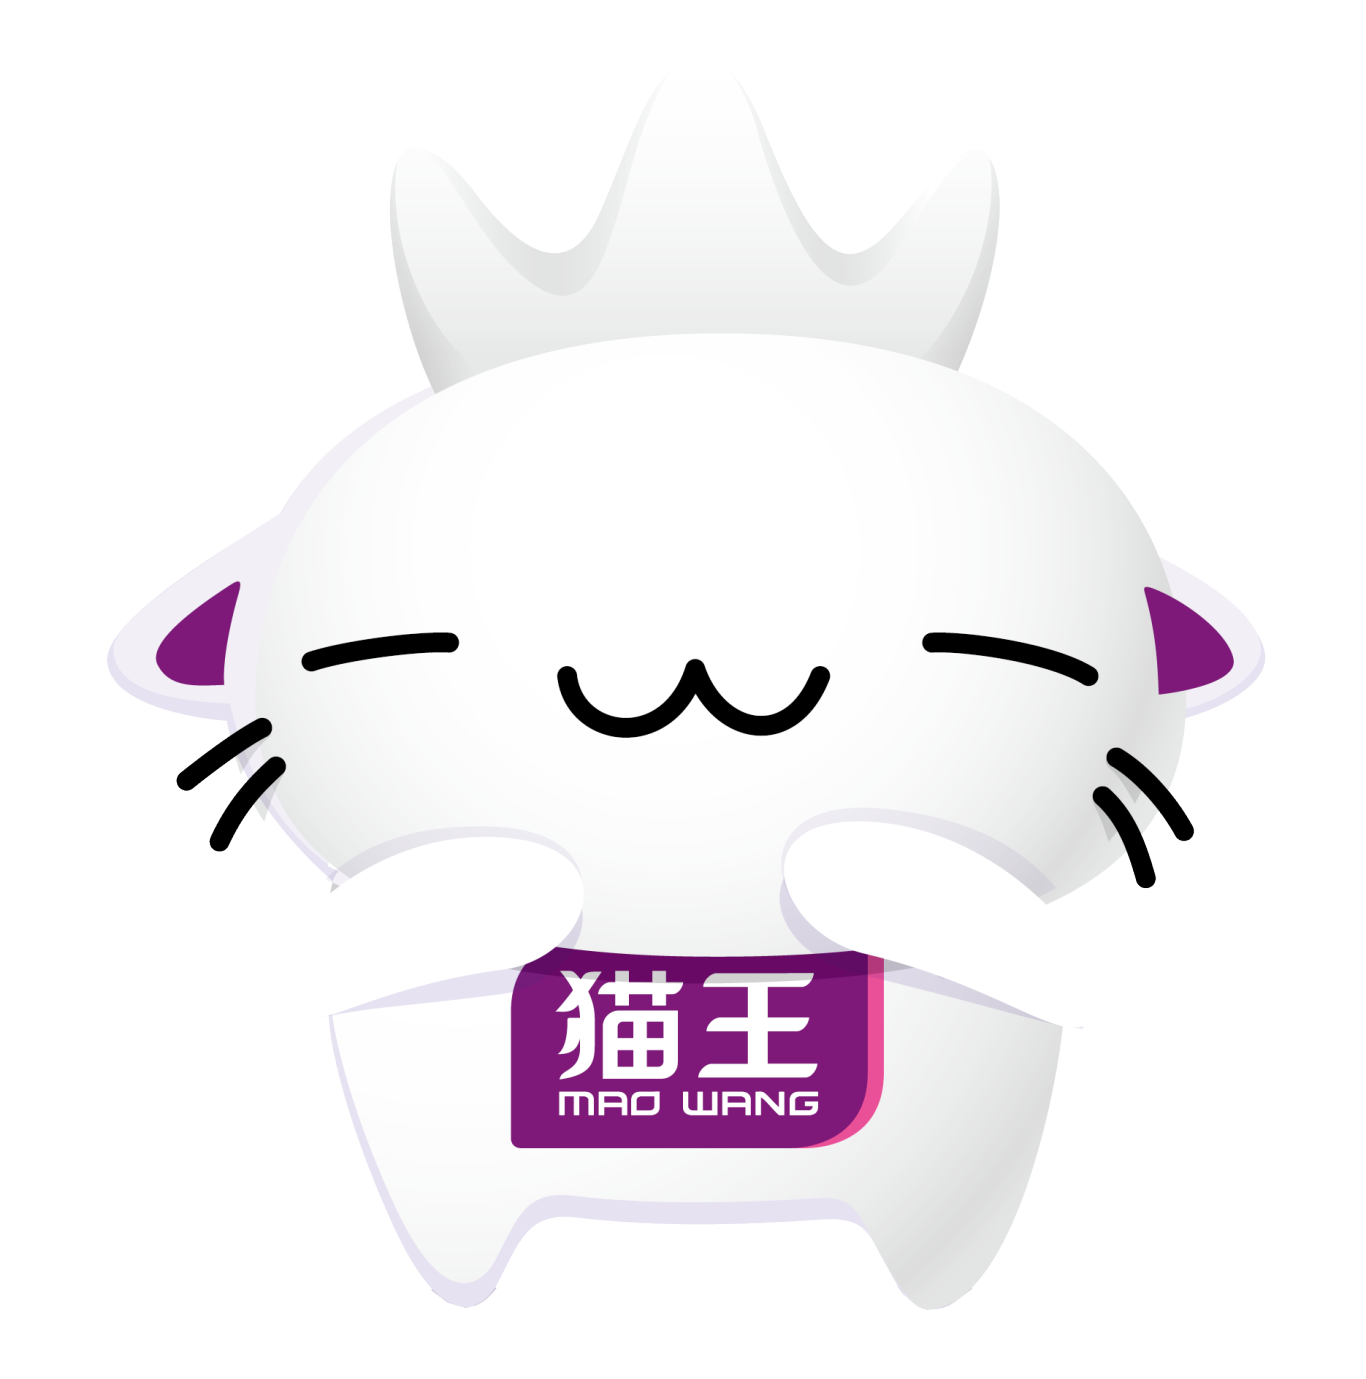 貓王紙巾吉祥物設計圖2